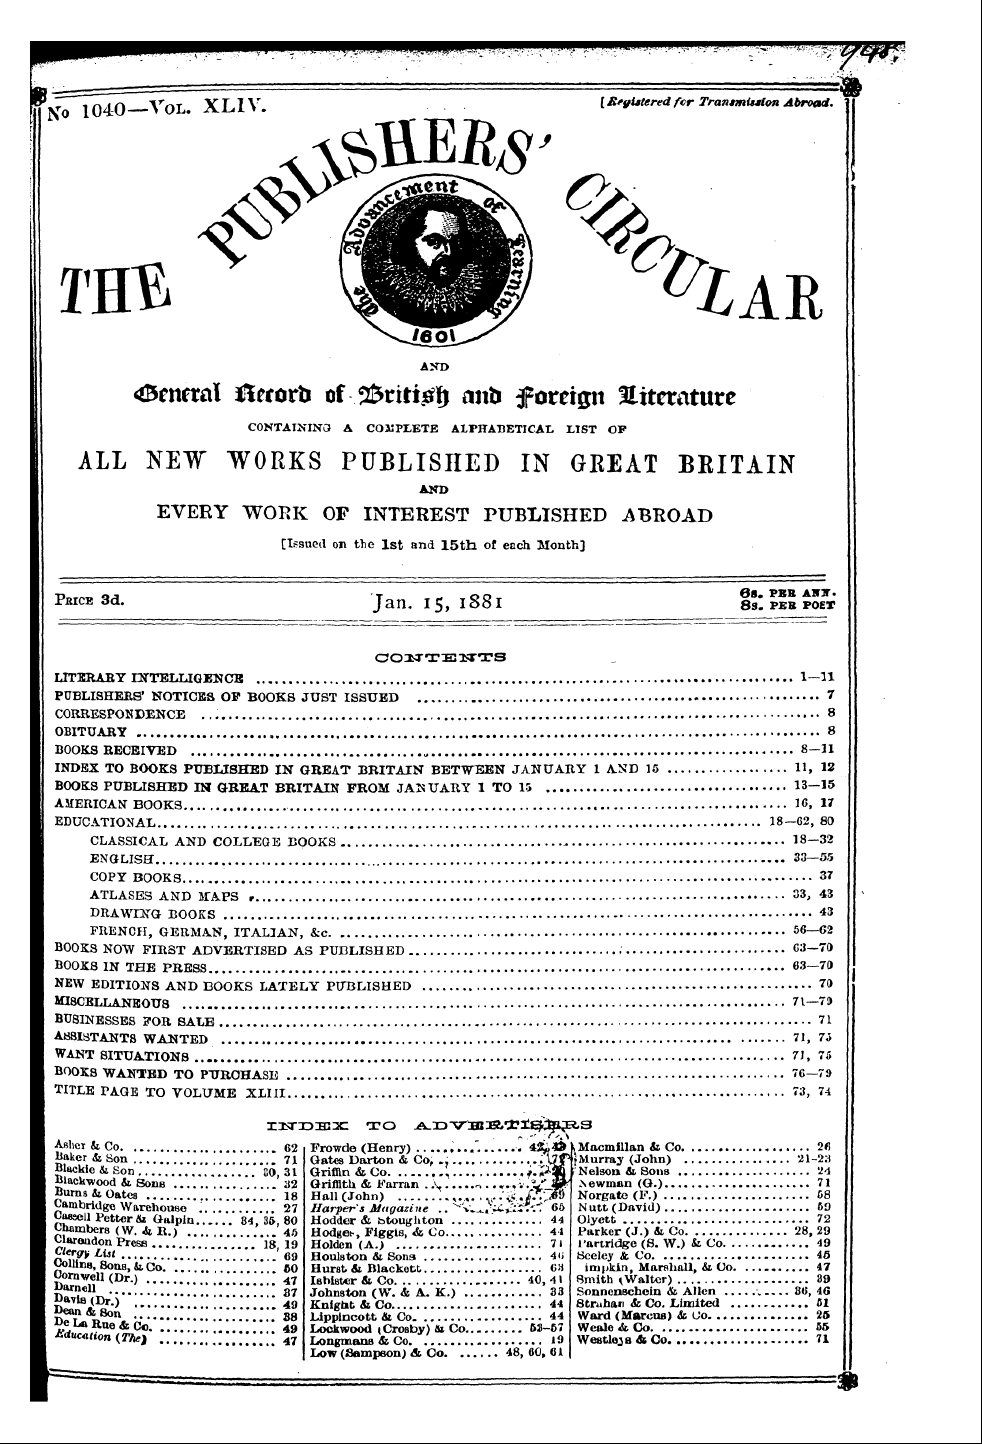 Publishers’ Circular (1880-1890): jS F Y, 1st edition - I Litbraey Dsttelugencb 1—H I Publishers...